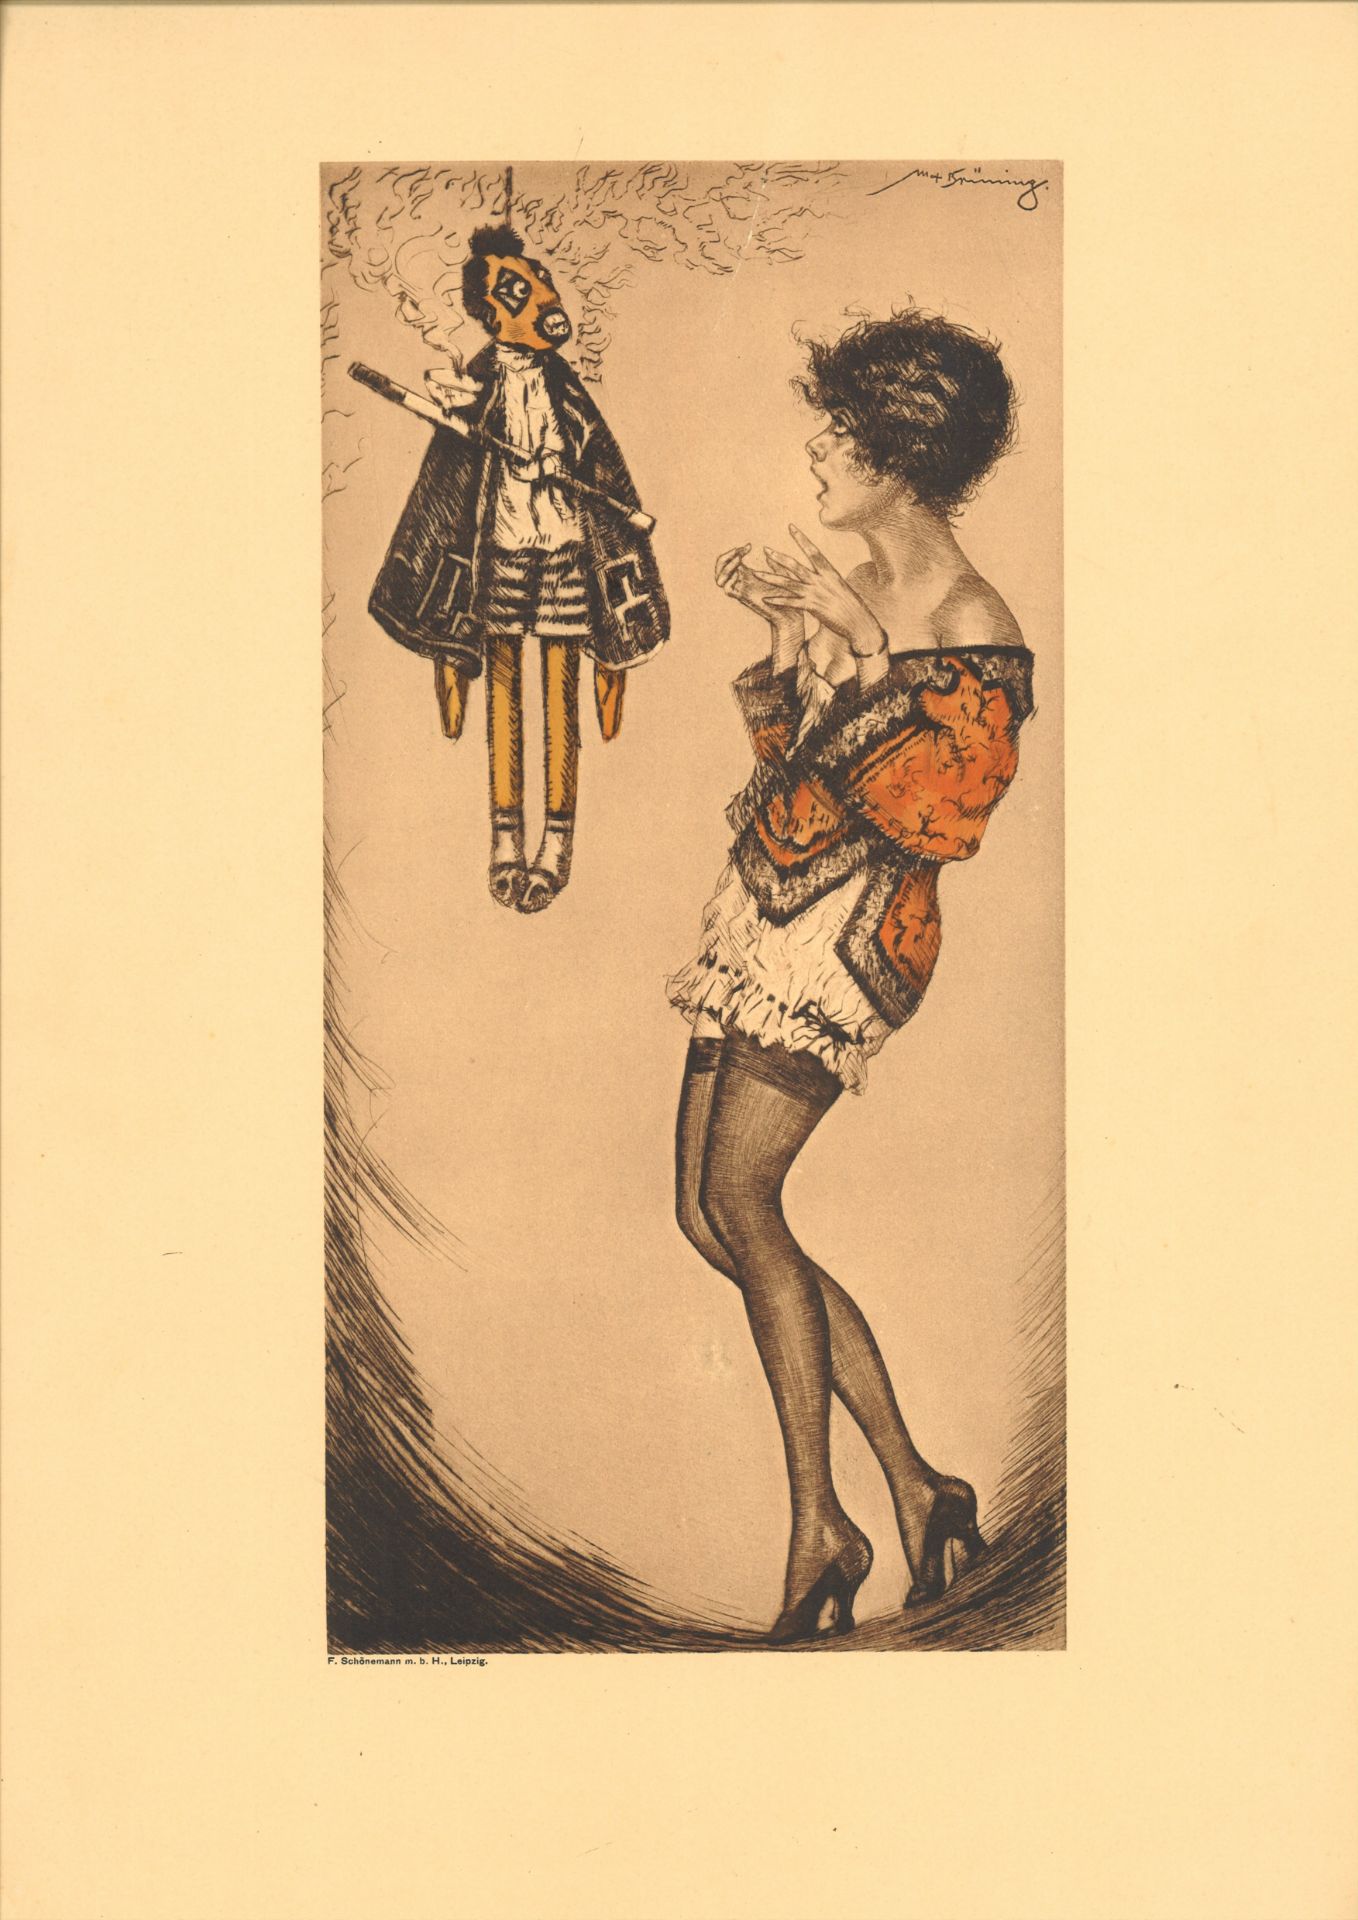 Max Brünning (1887-1968), Farbradierung "Junges Mädchen mit Marionette". Gesamtmaße des Blattes: